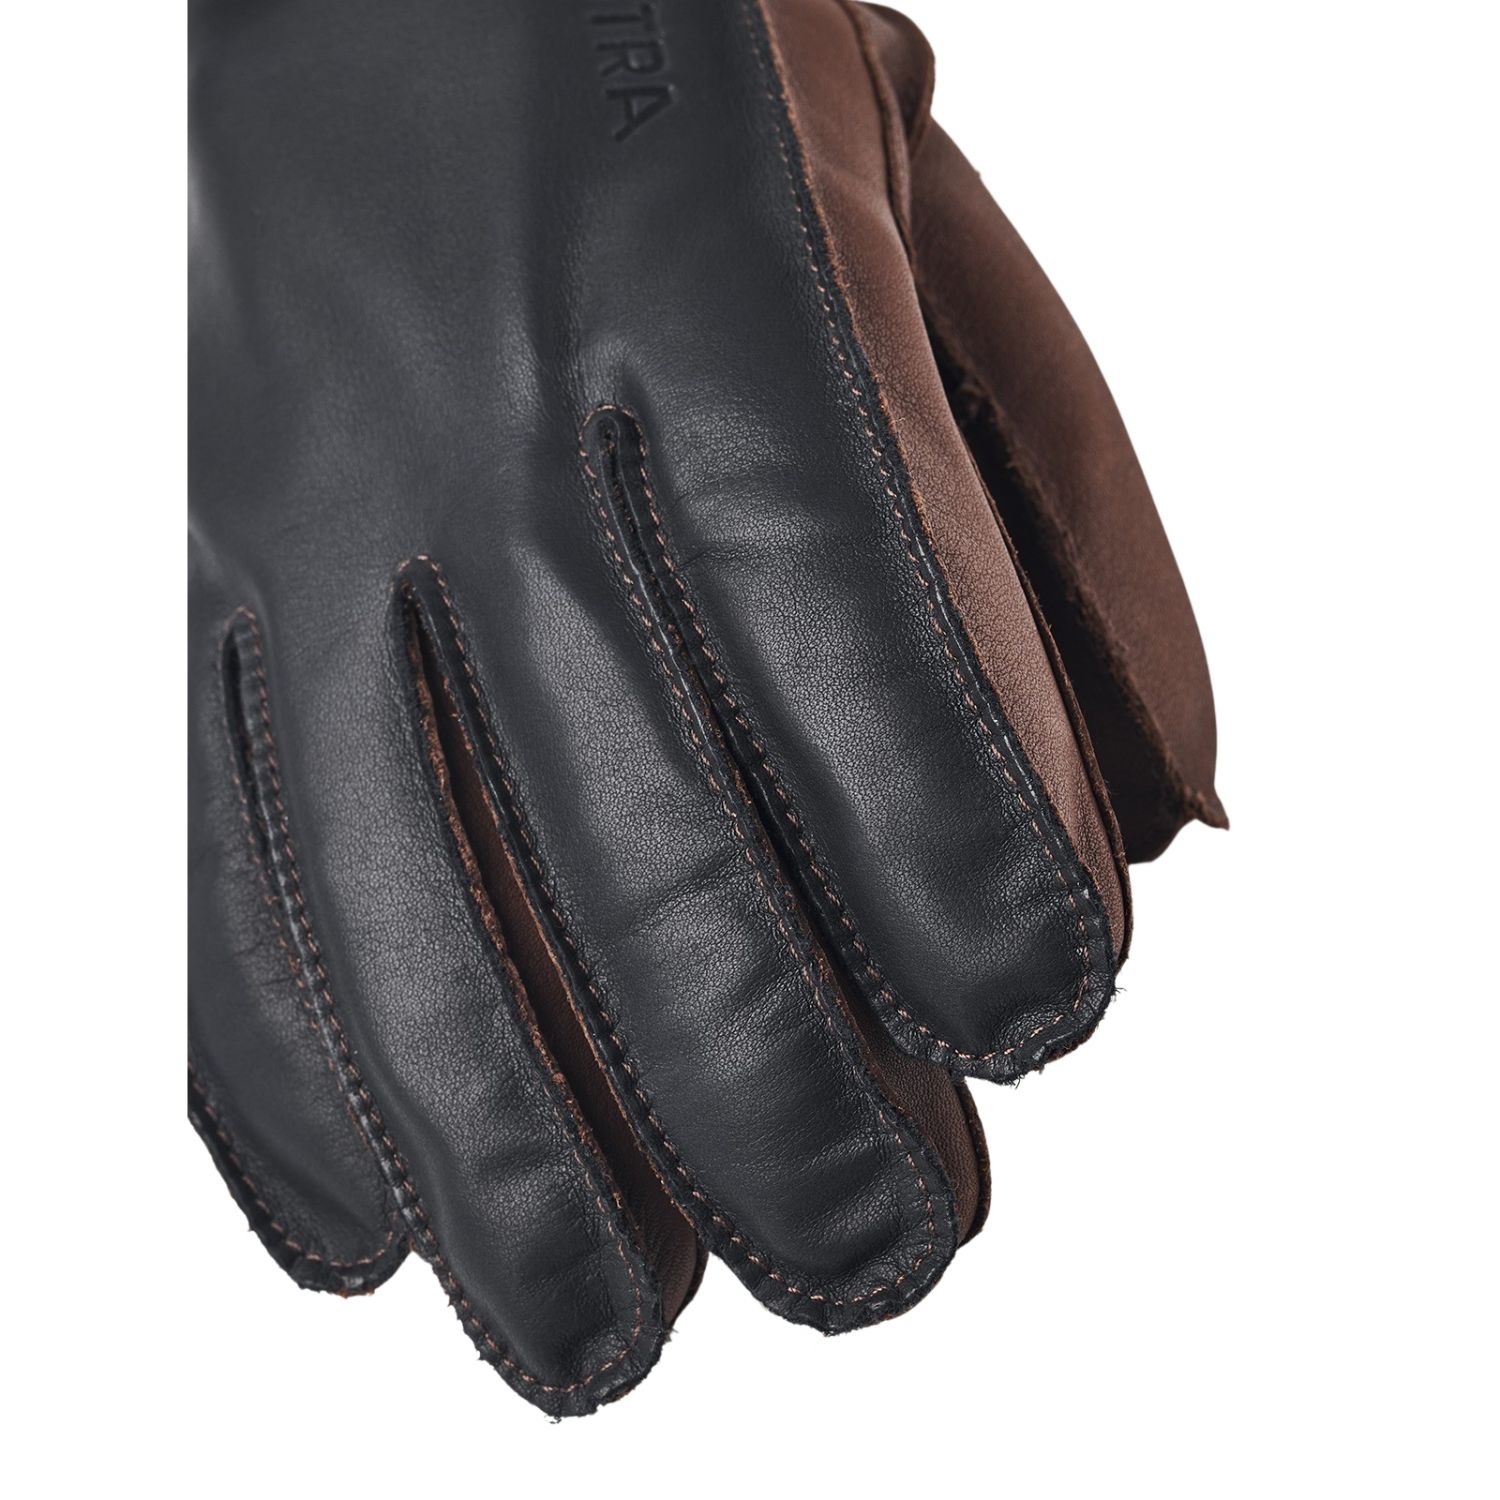 Hestra Wakayama, handschoenen, navy/bruin